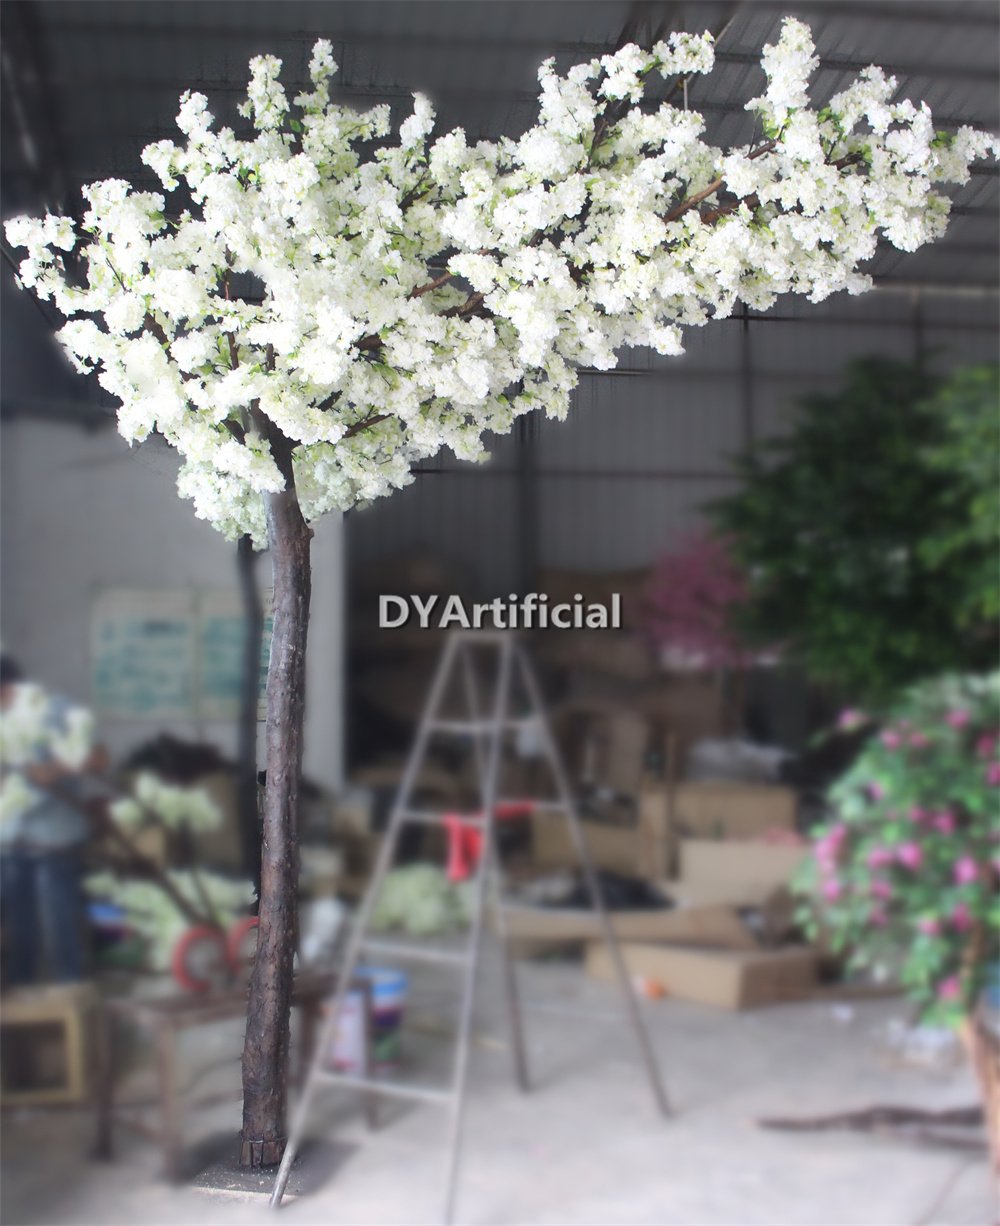 tbb 31 350cm oneside artificial cherry blossom tree white color